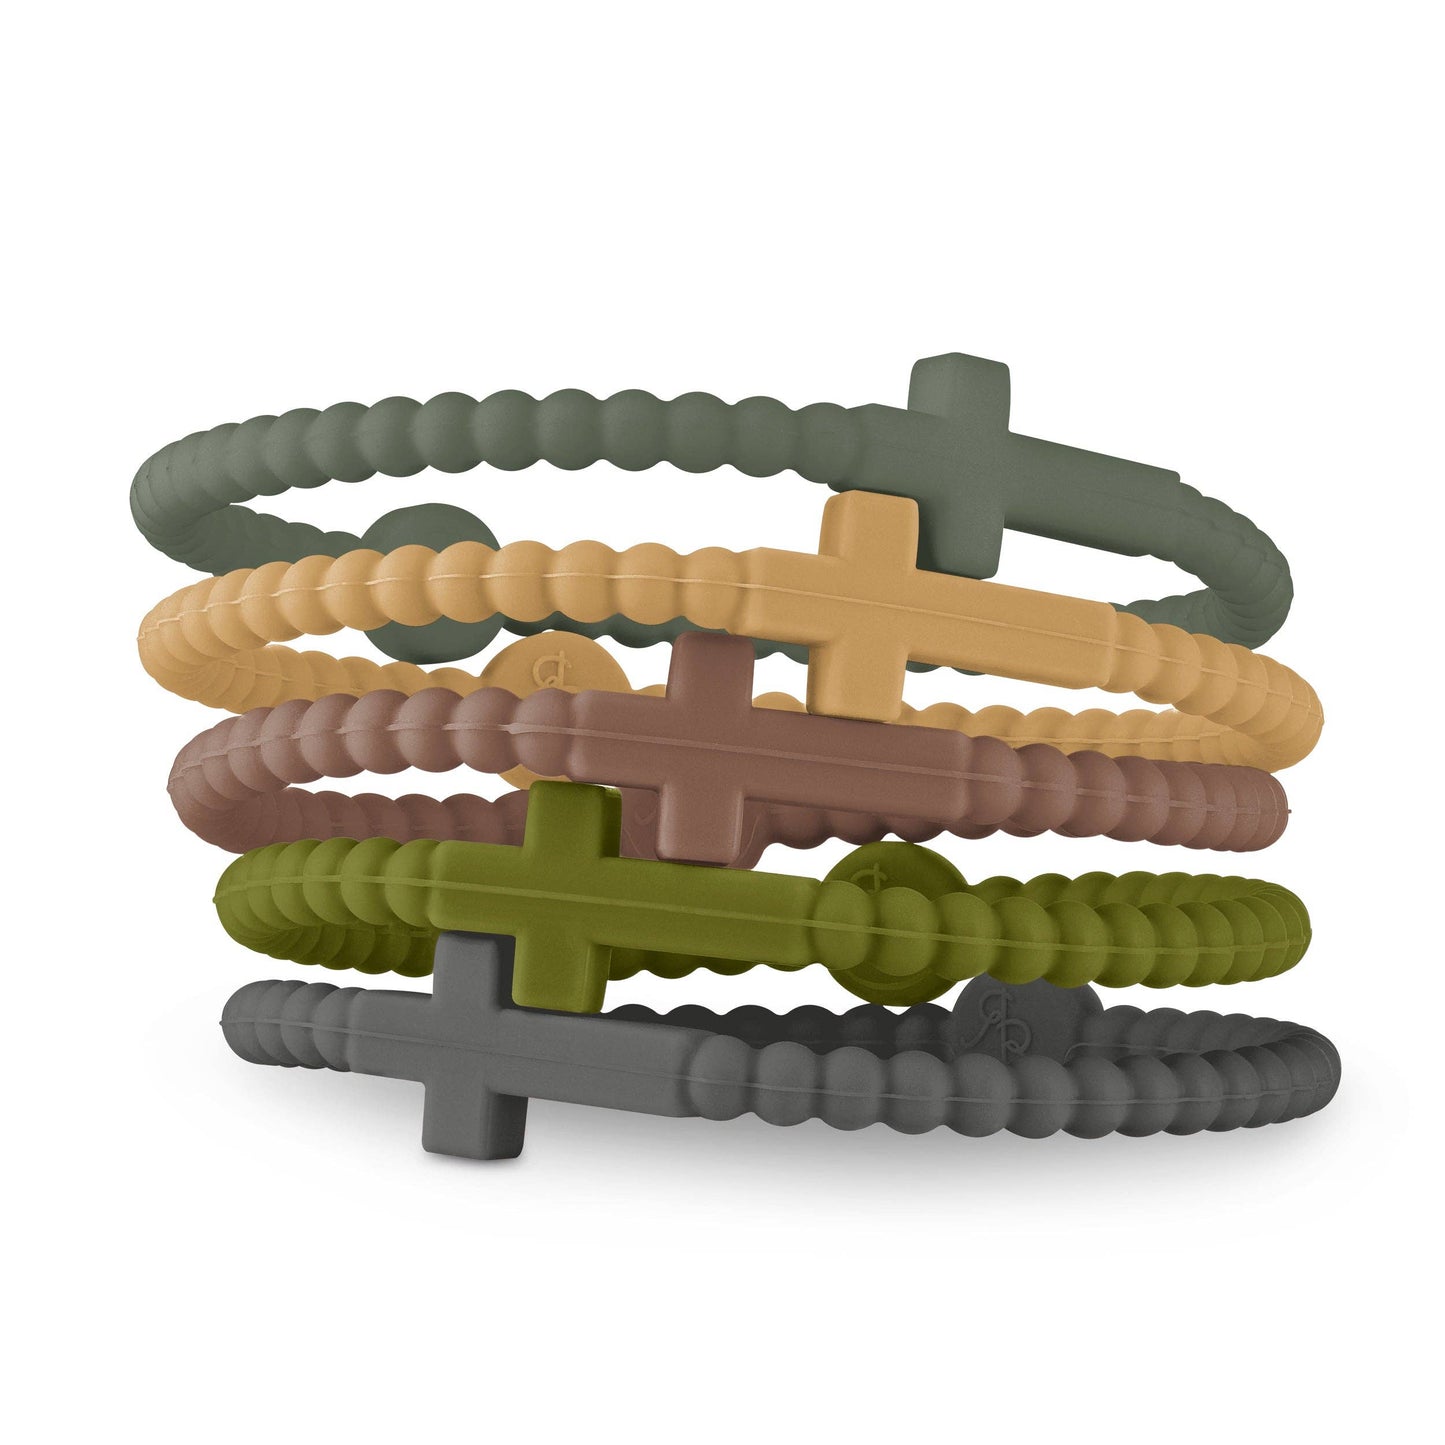 Jesus Bracelets (Cross Bracelets): Neon (5 pack) / Extra Small